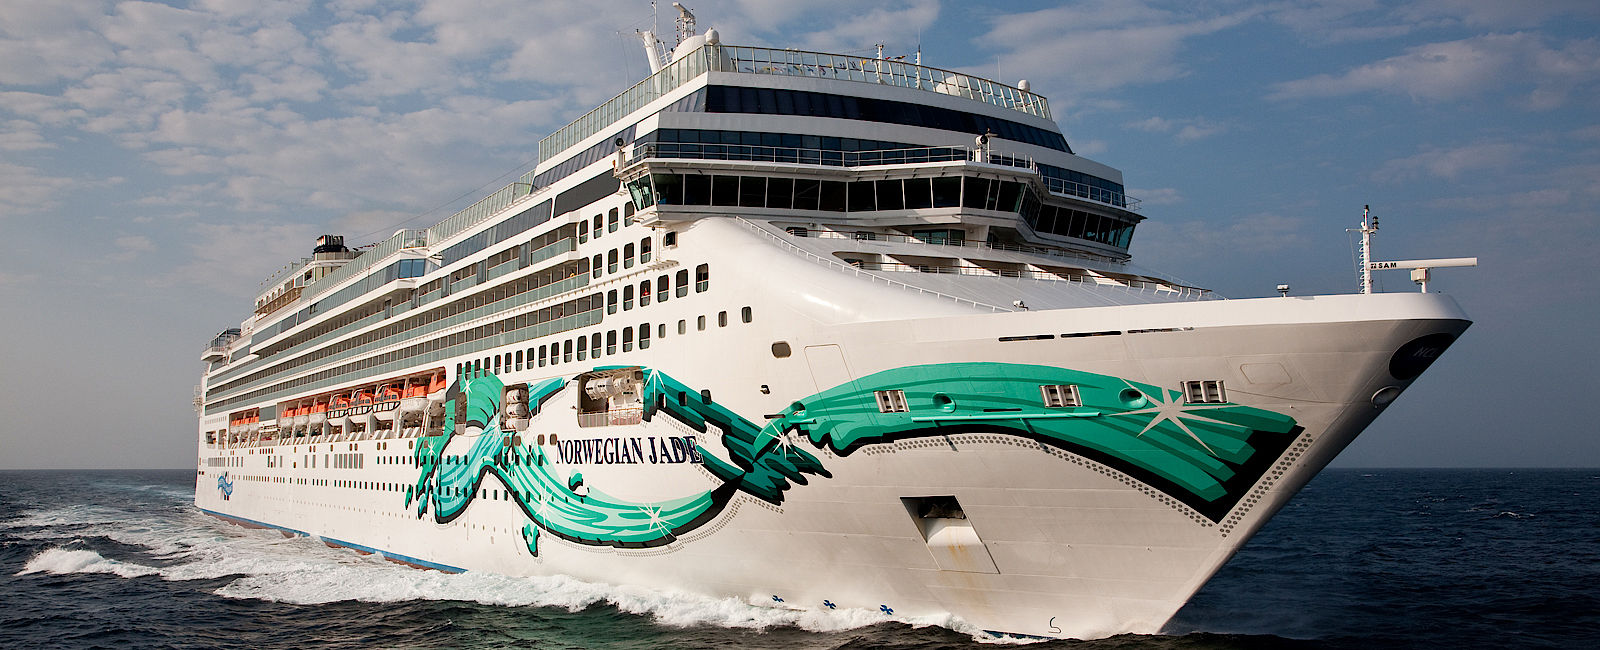 KREUZFAHRT NEWS
 Norwegian Cruise Line 
